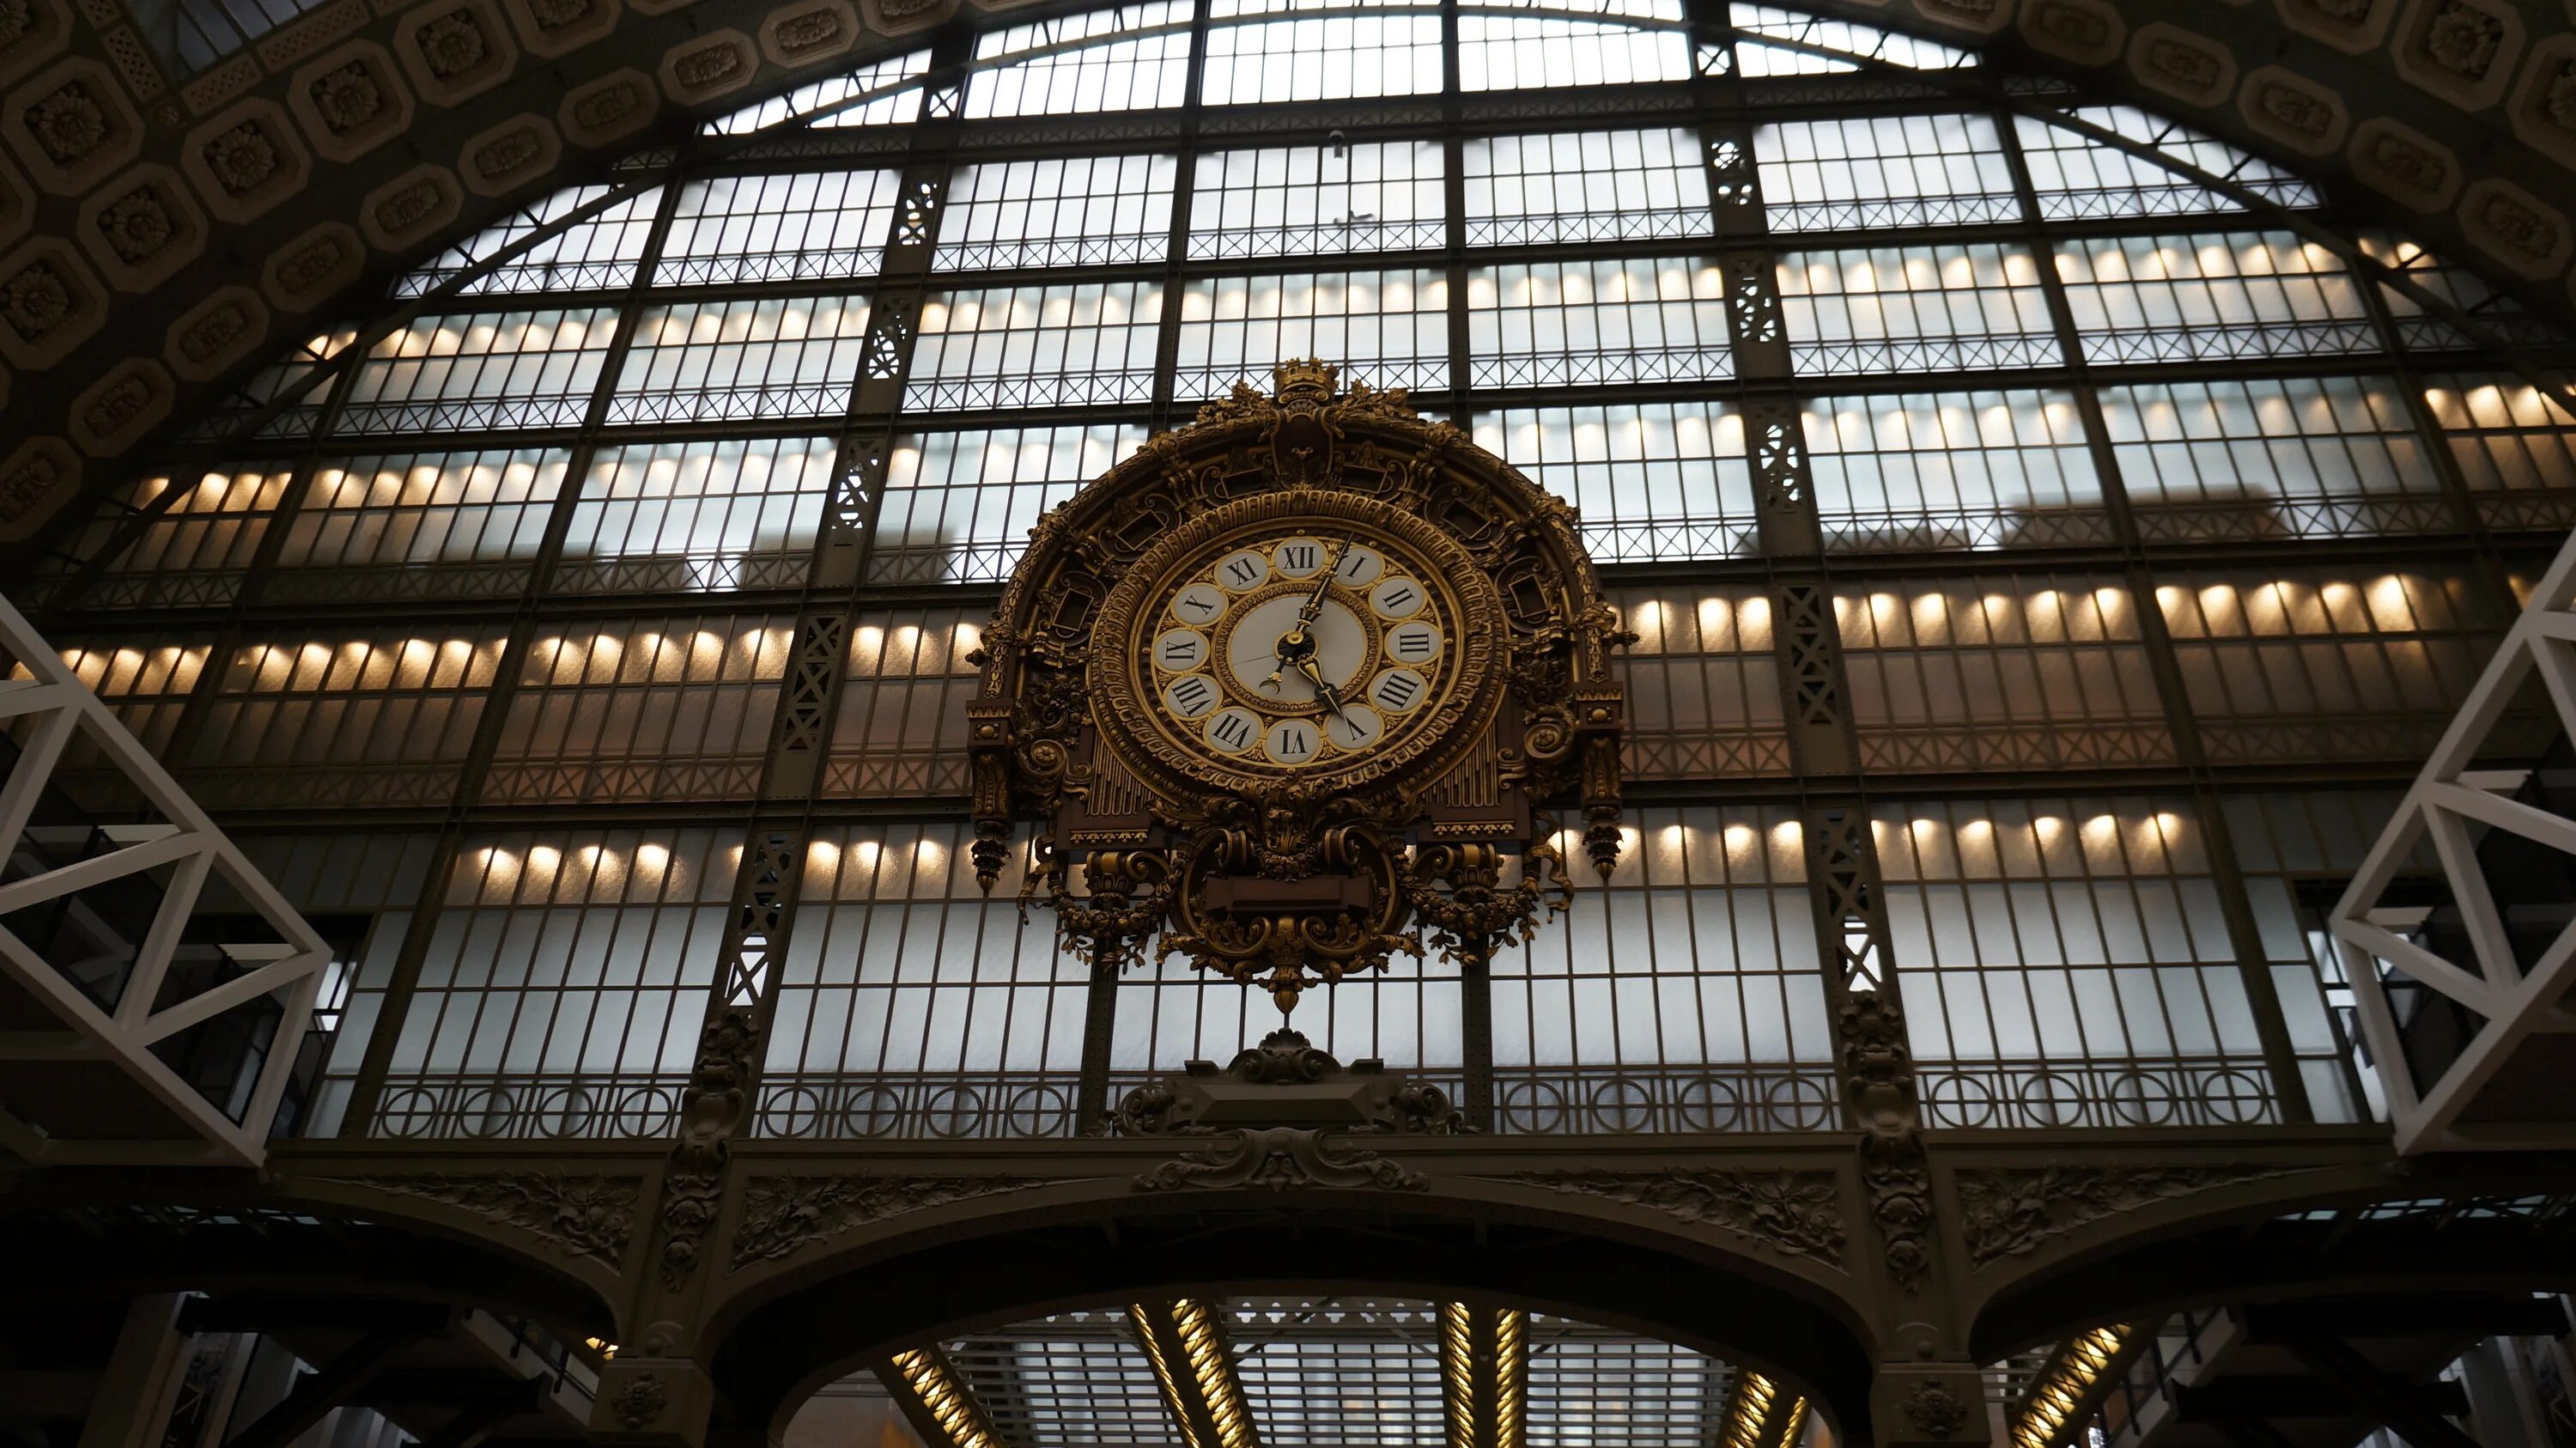 Стоки часов. Часы на вокзале. Часы сочинского вокзала. Вокзал с часами. Башенные часы на вокзале.